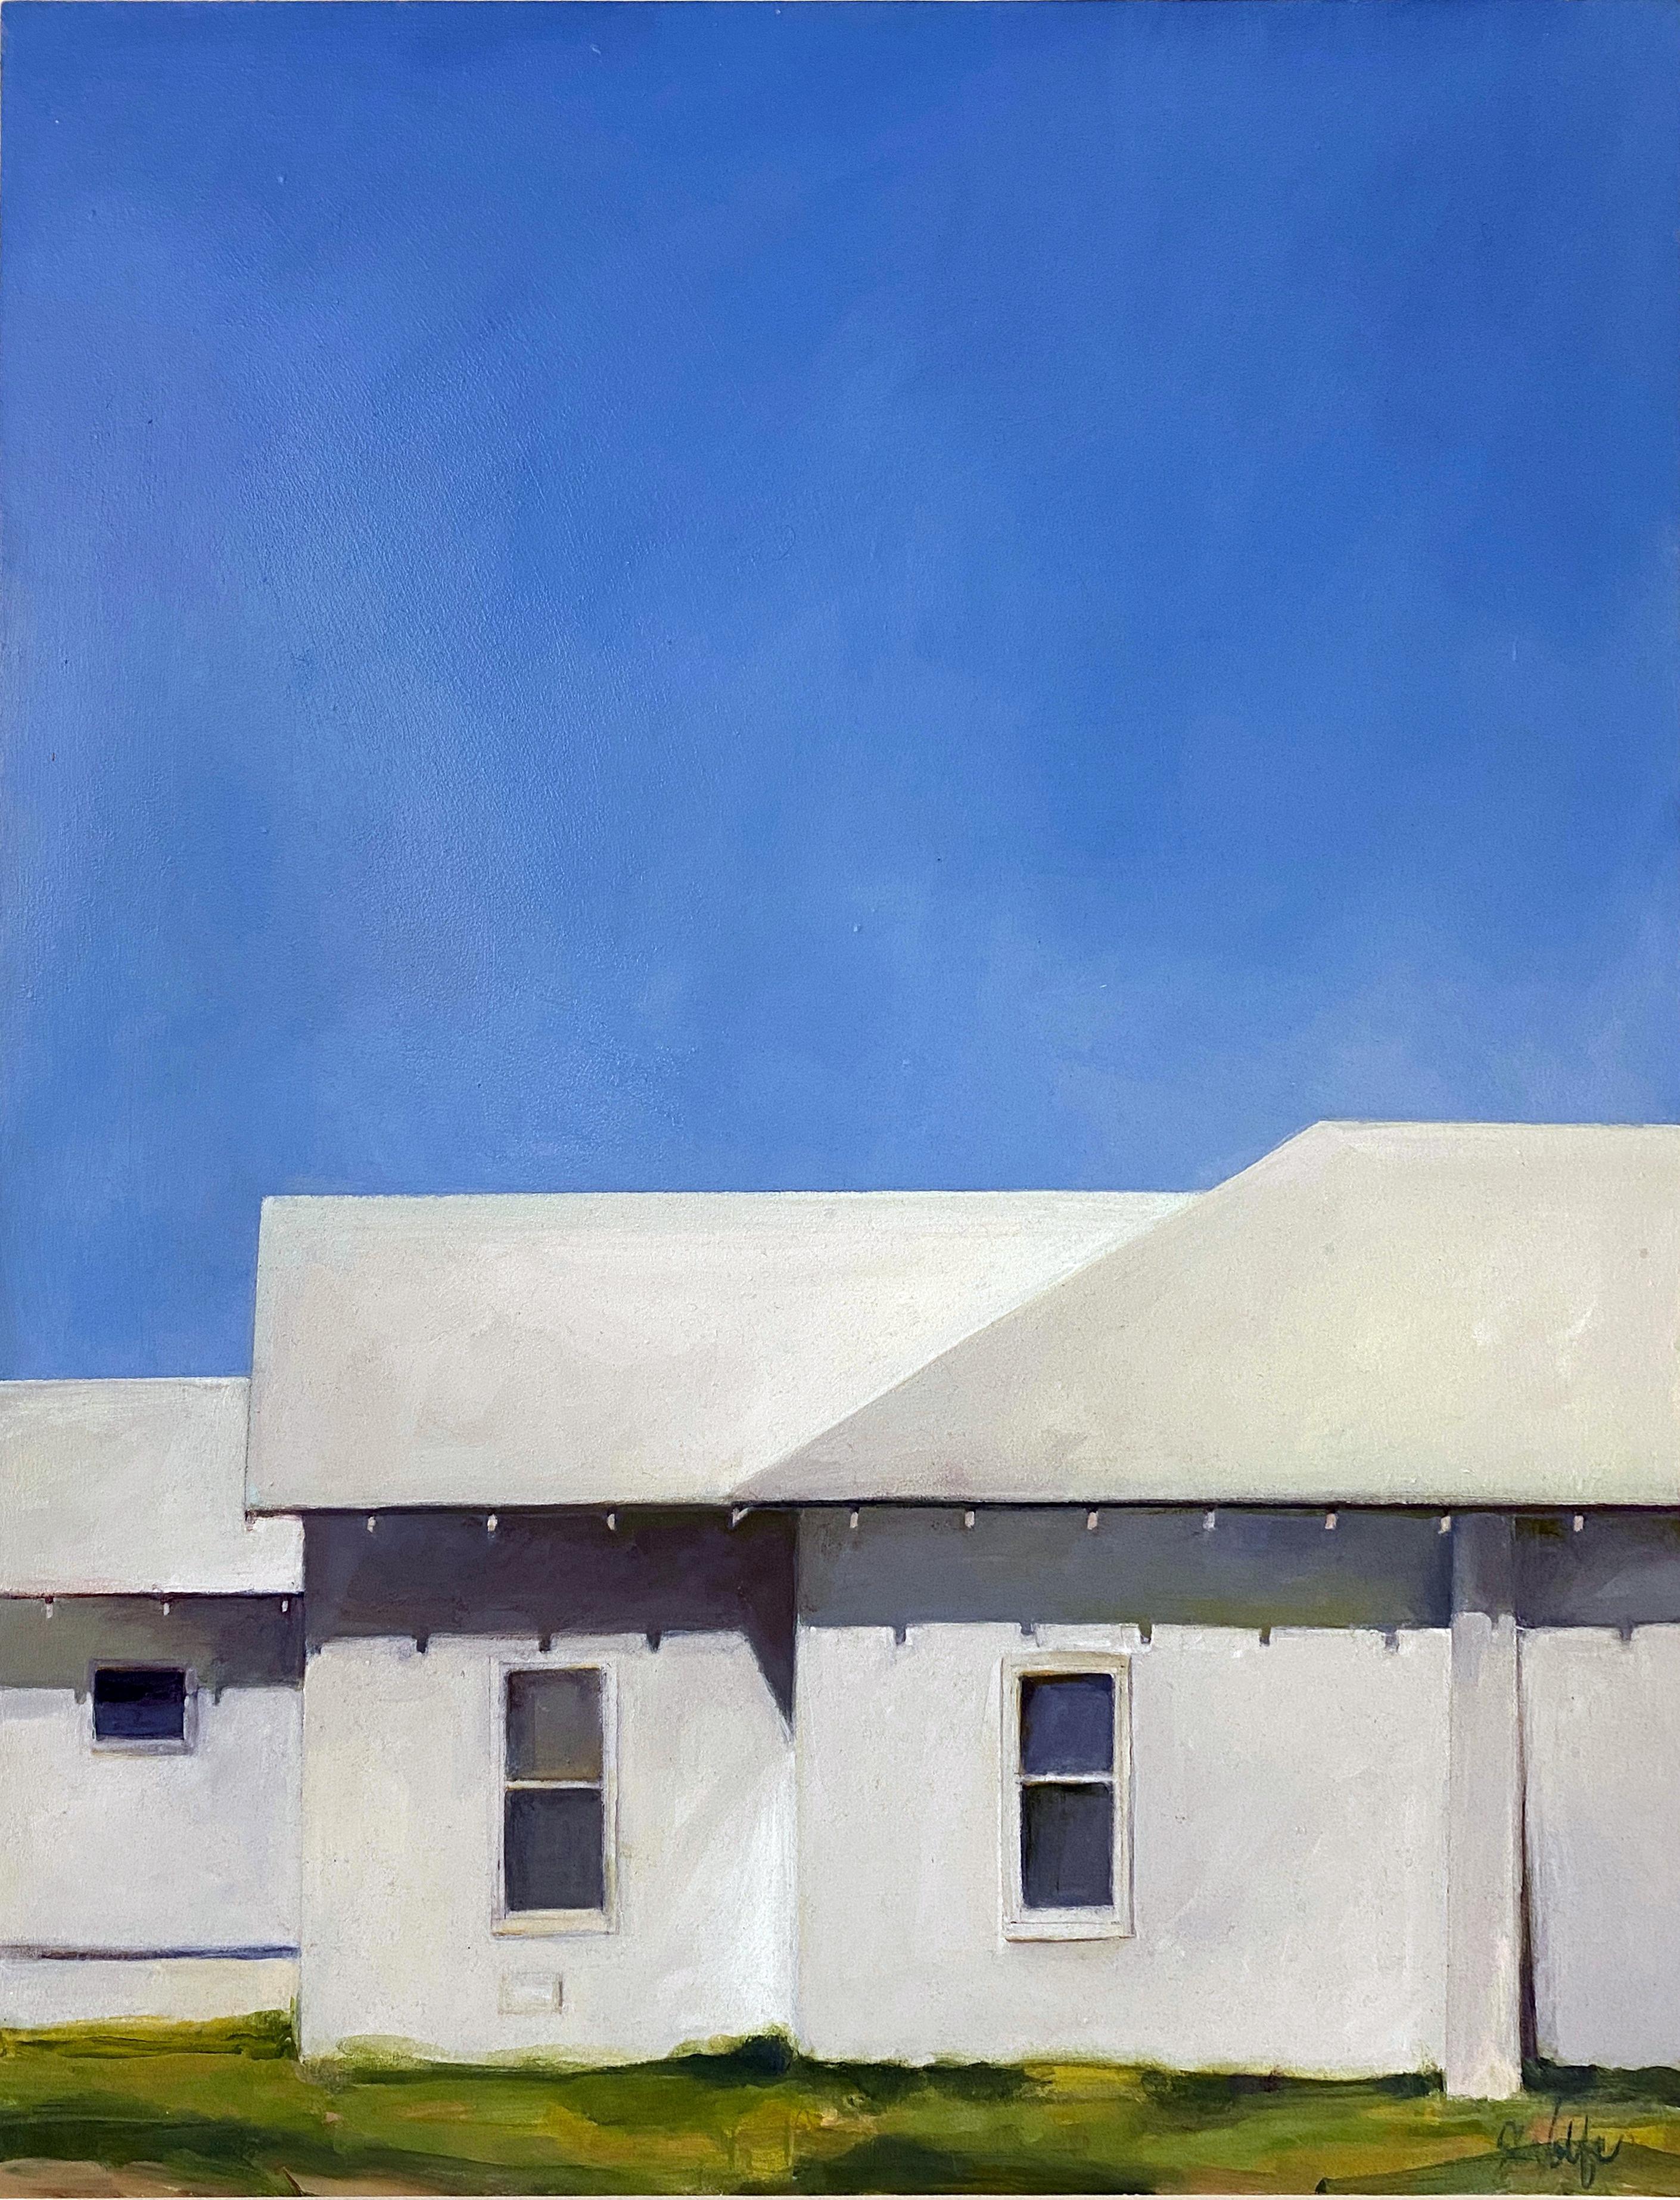 Dieses 30" x 24" große Gemälde von John Wolfe aus dem Jahr 2013 zeigt eine ländliche Kirche in Davidson, Oklahoma. Wolfe konzentriert sich in seiner Darstellung auf das Profil der weißen Kirche vor einem strahlend blauen Himmel. Die Seitenansicht